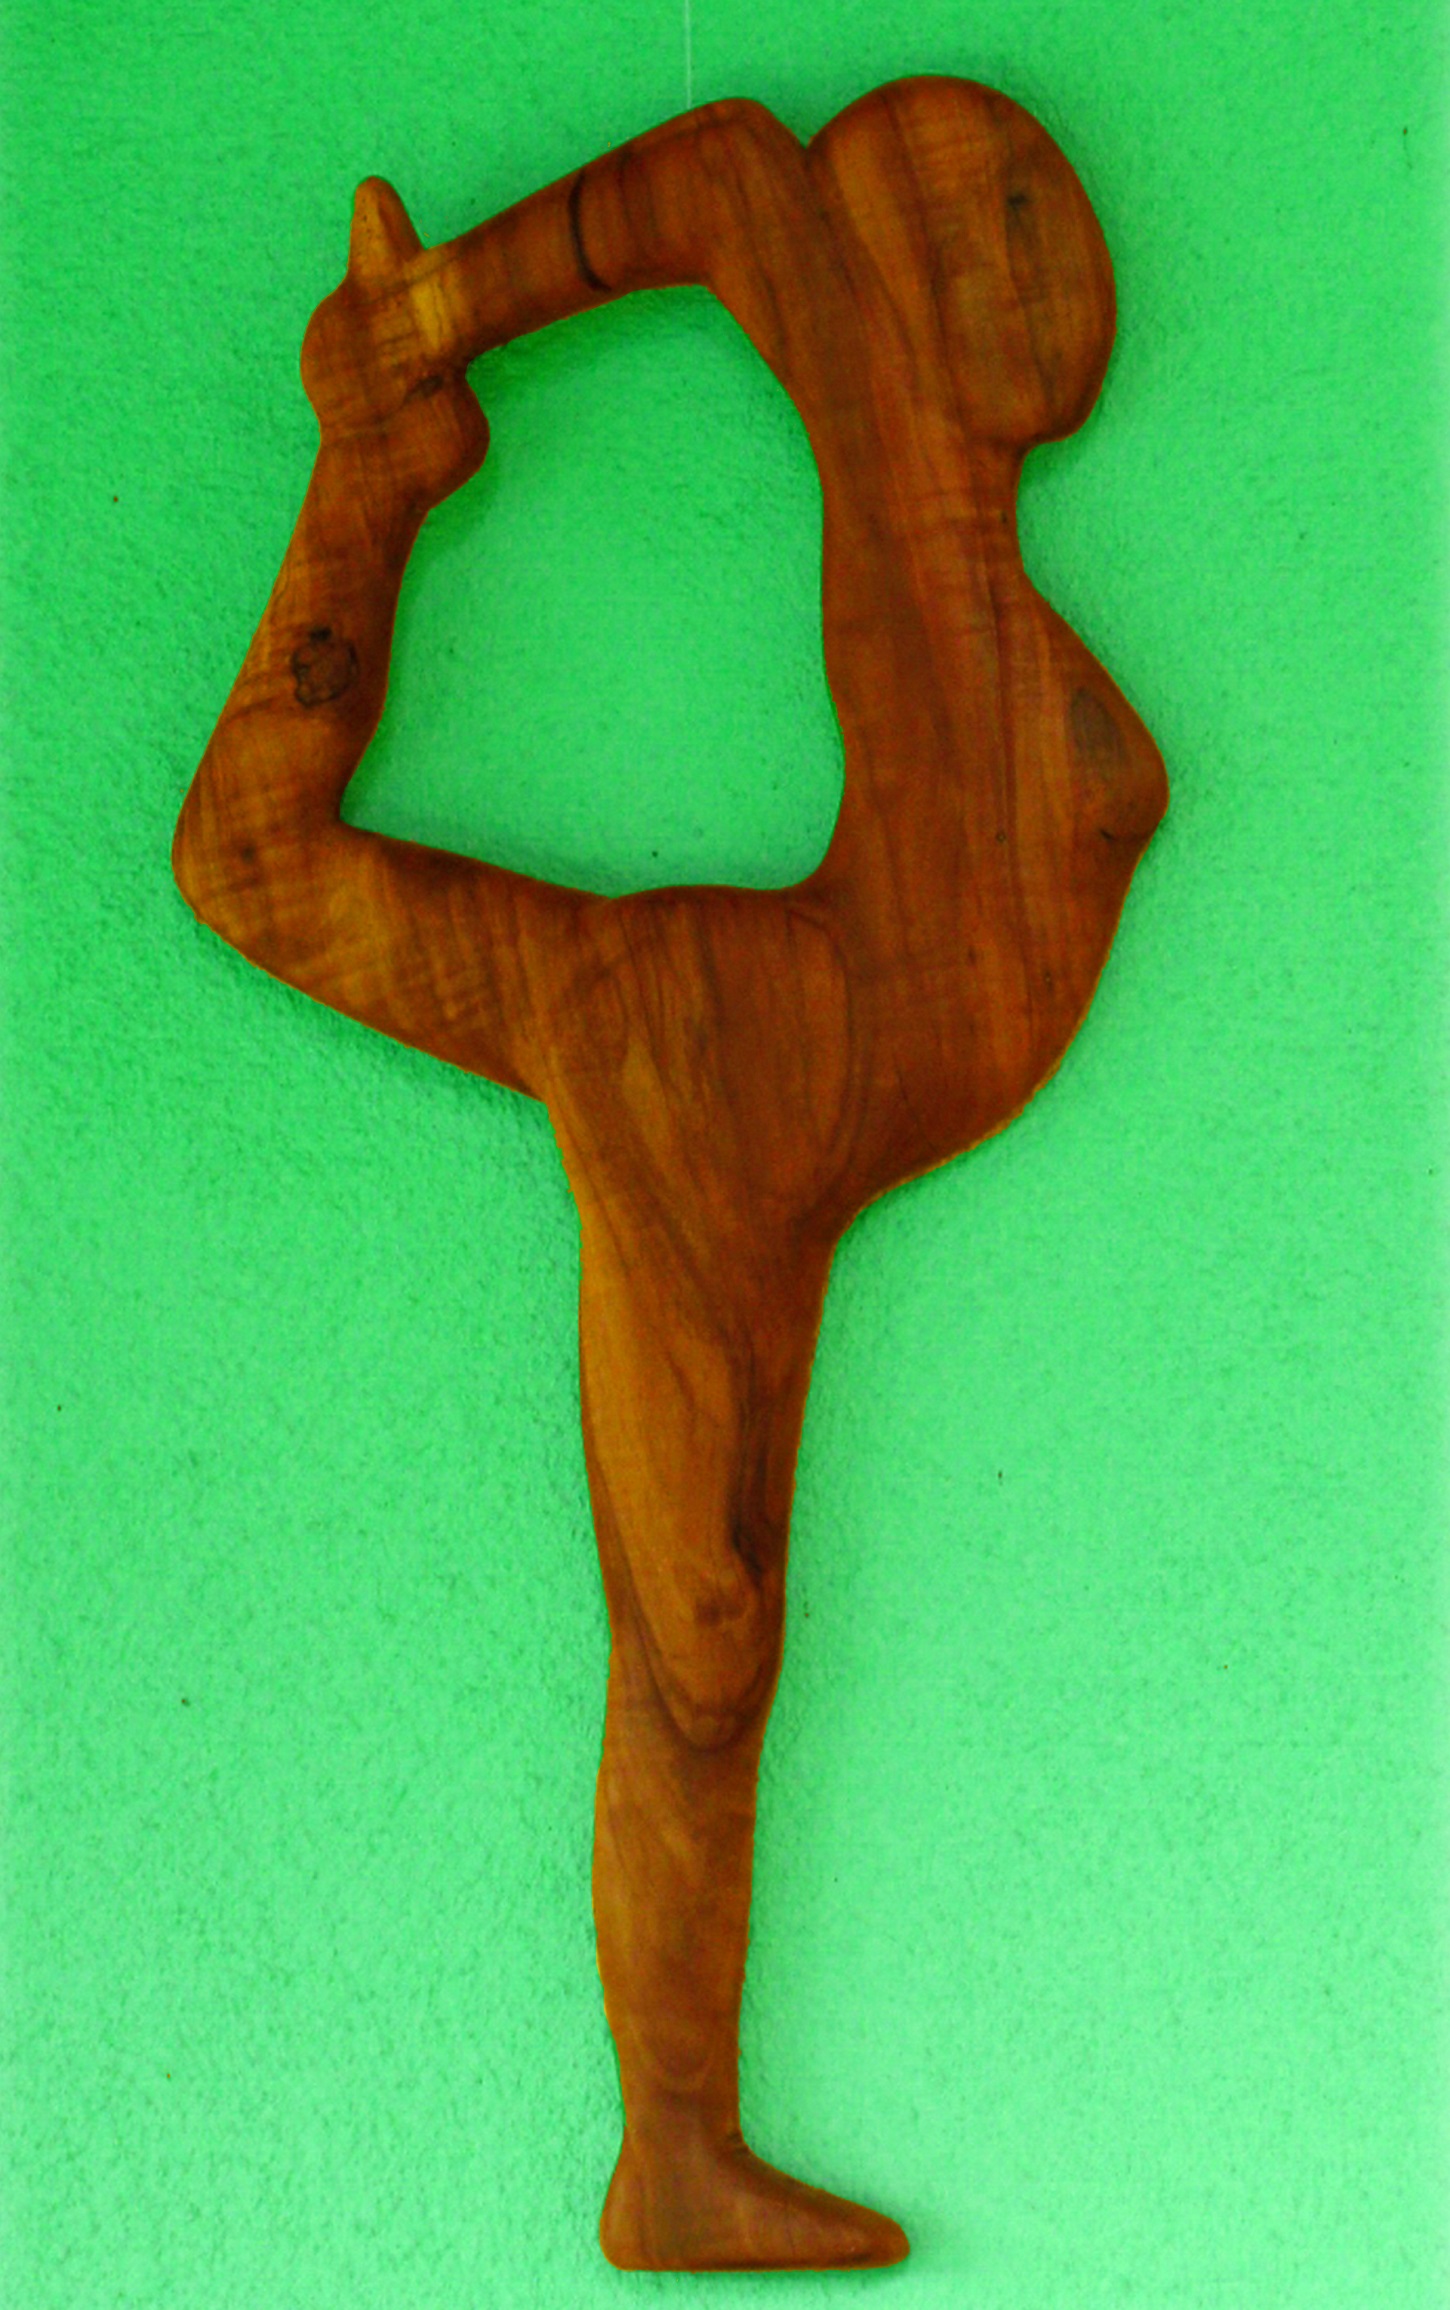 Gymnastic Woman - Holzfigur von Hans-Ulrich Wartenweiler - Holzskulpturen-Archiv, Holzobjekte, Holzfiguren, Holzdesign